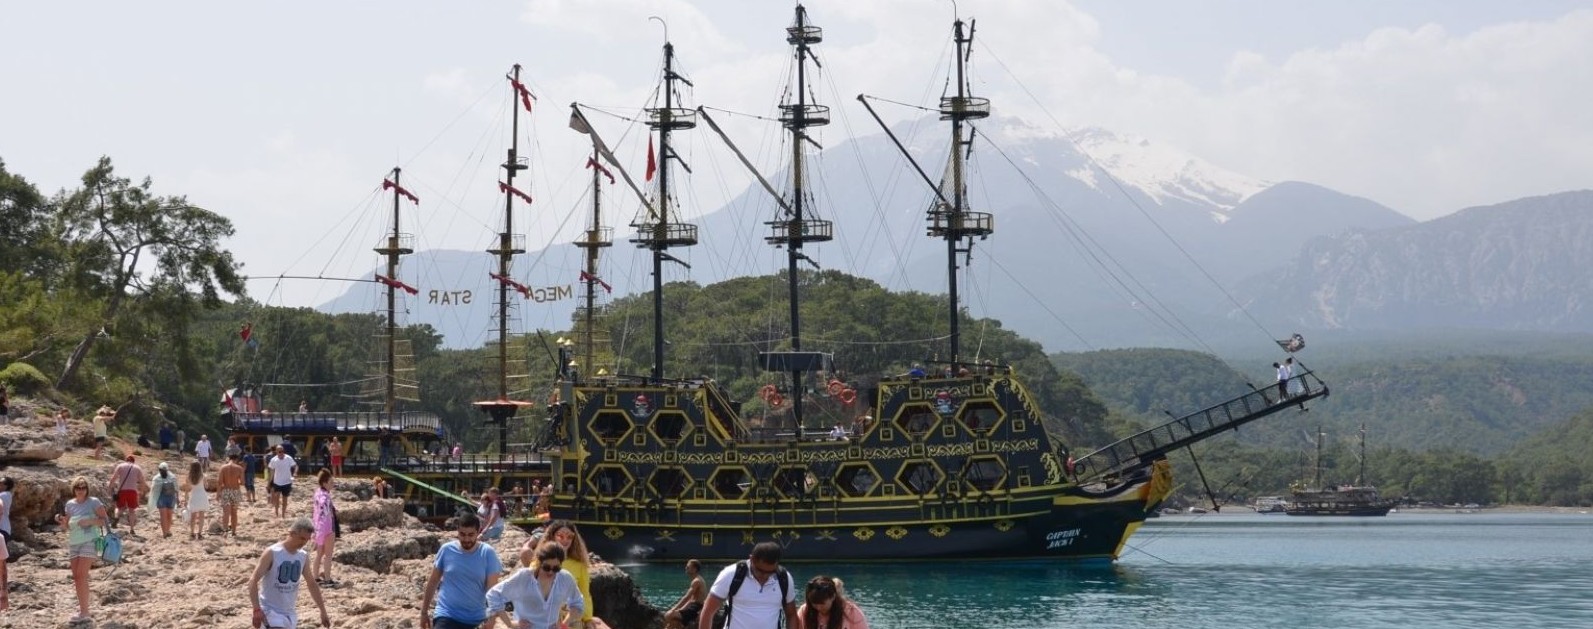 Тур на Пиратском Корабле antalya tury